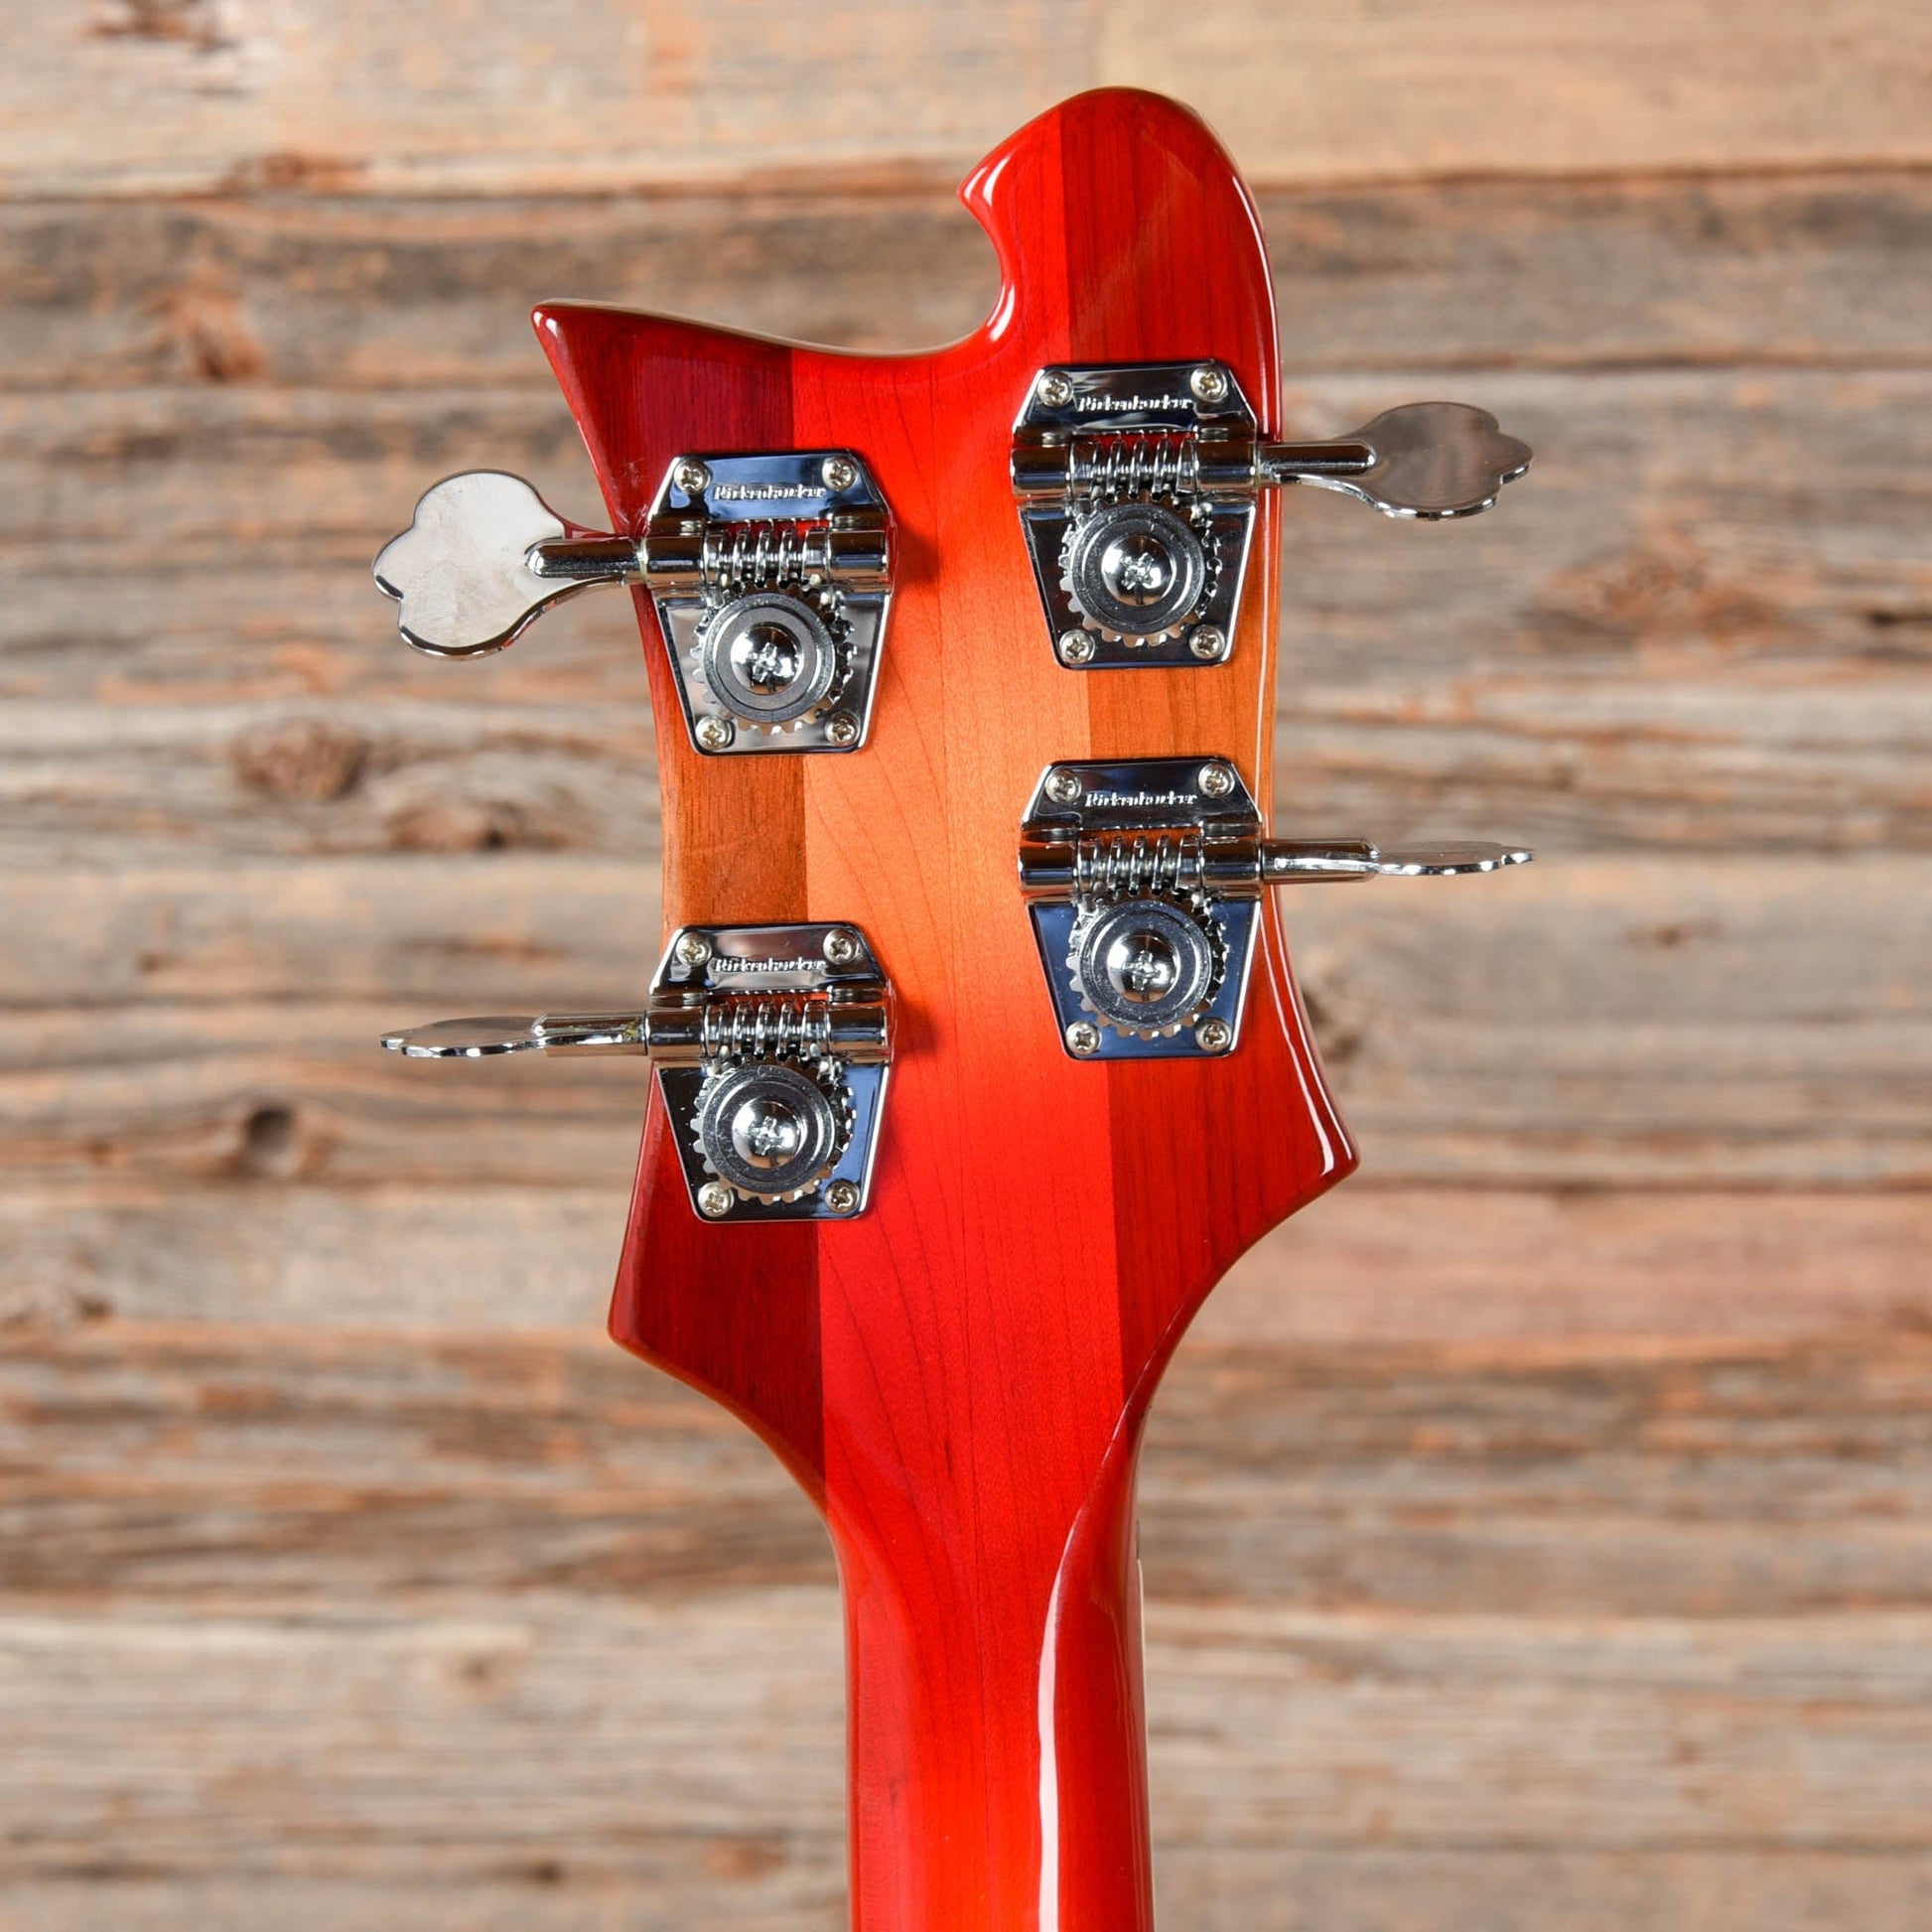 Rickenbacker 4003 Fireglo 2019 Bass Guitars / 4-String